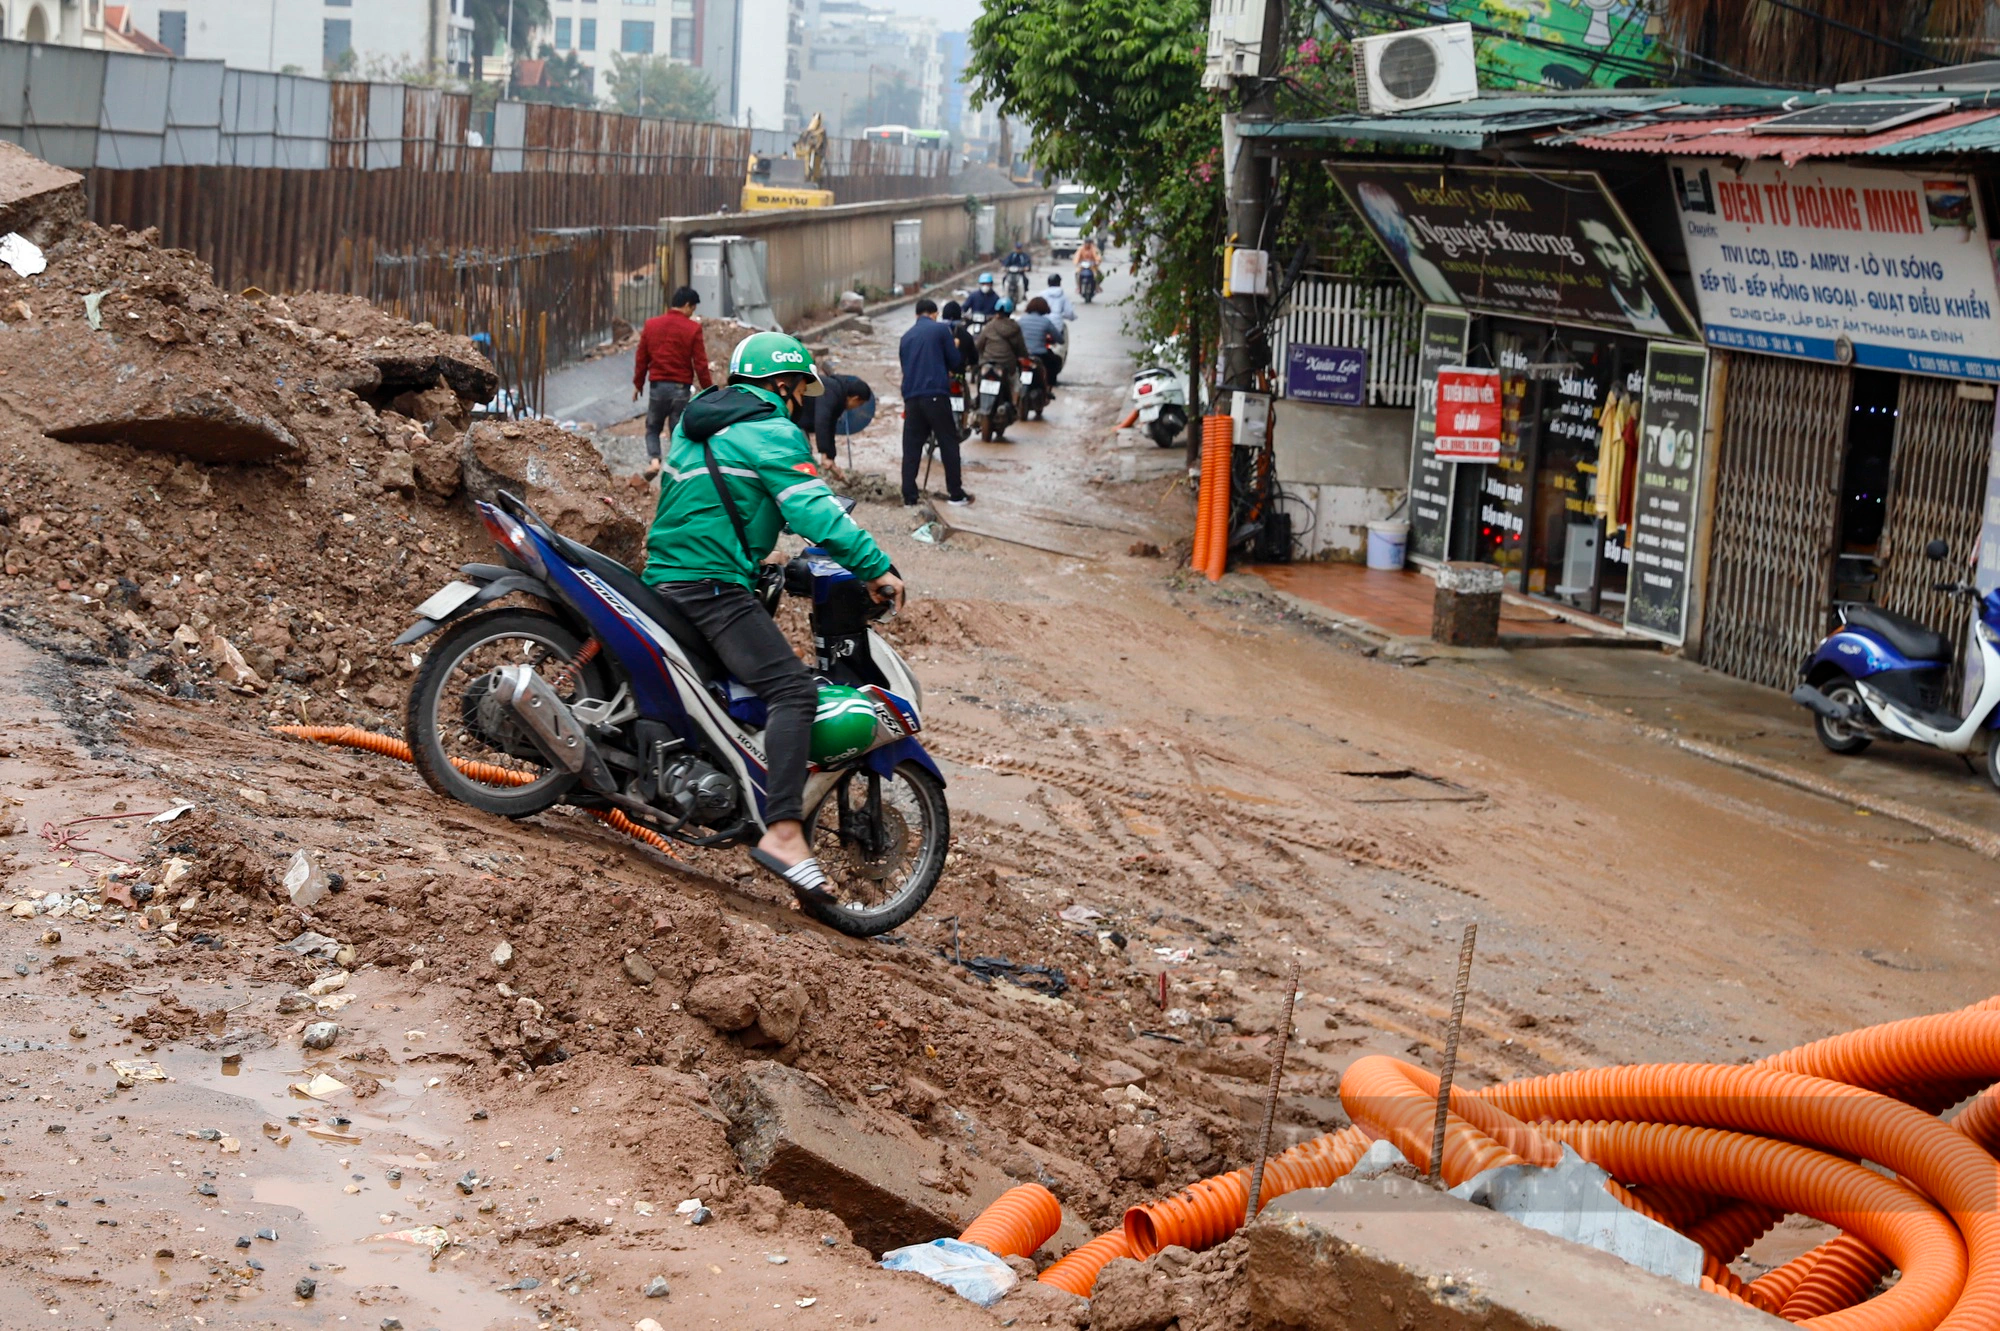 Ôtô sập gầm, xe máy và người đi bộ lội nước qua dự án dài 3,7 km trị giá 815 tỷ đồng ở Hà Nội- Ảnh 10.